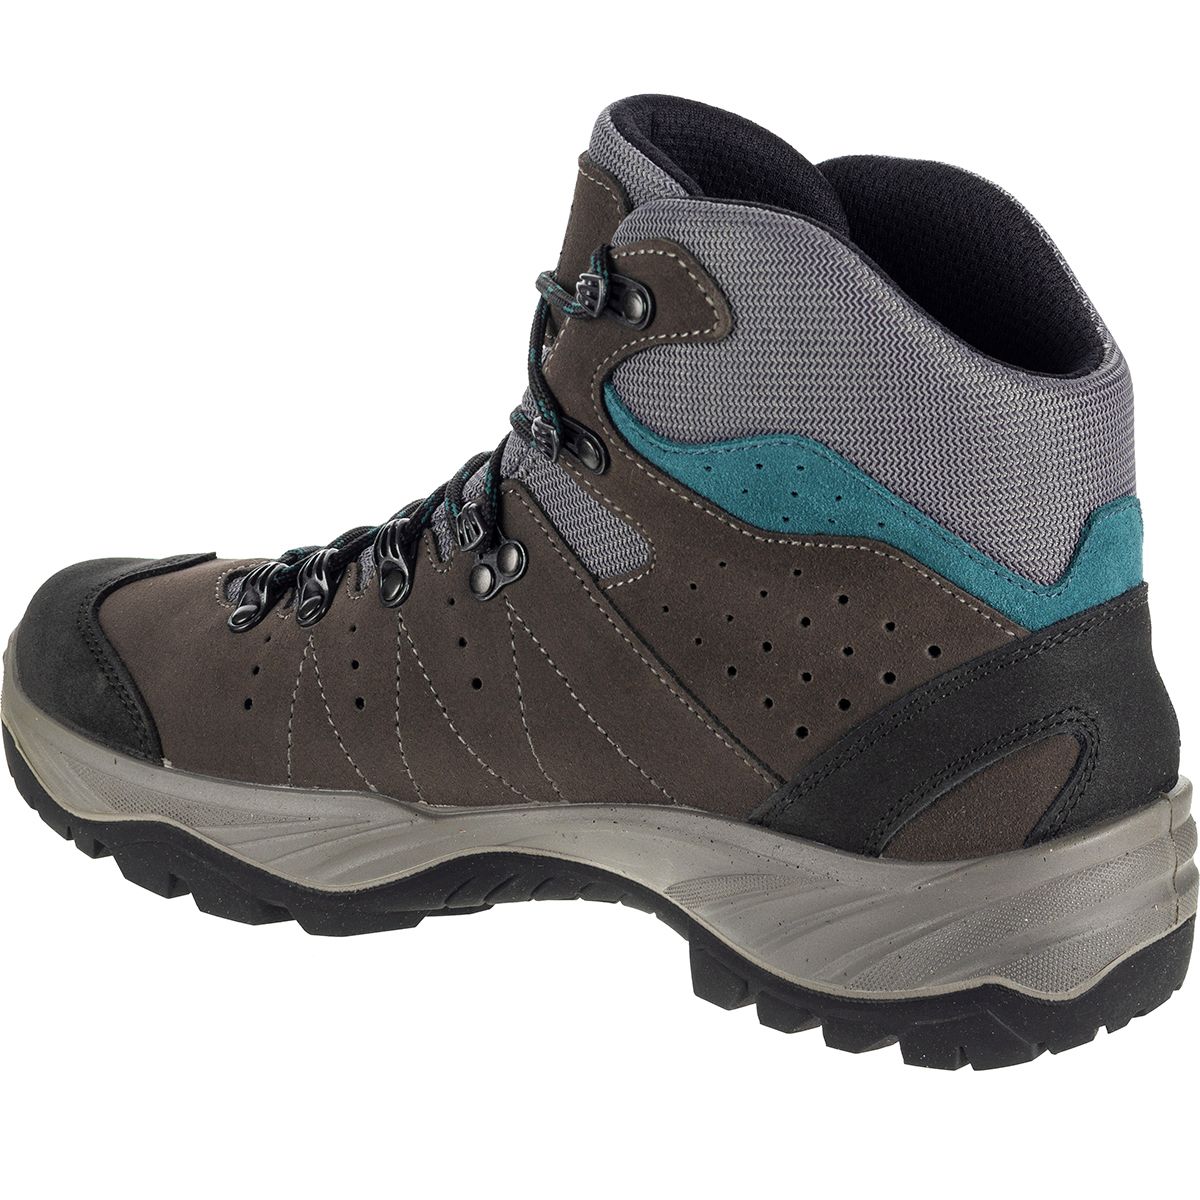 Scarpa Mistral GTX Boot - Men's - Footwear